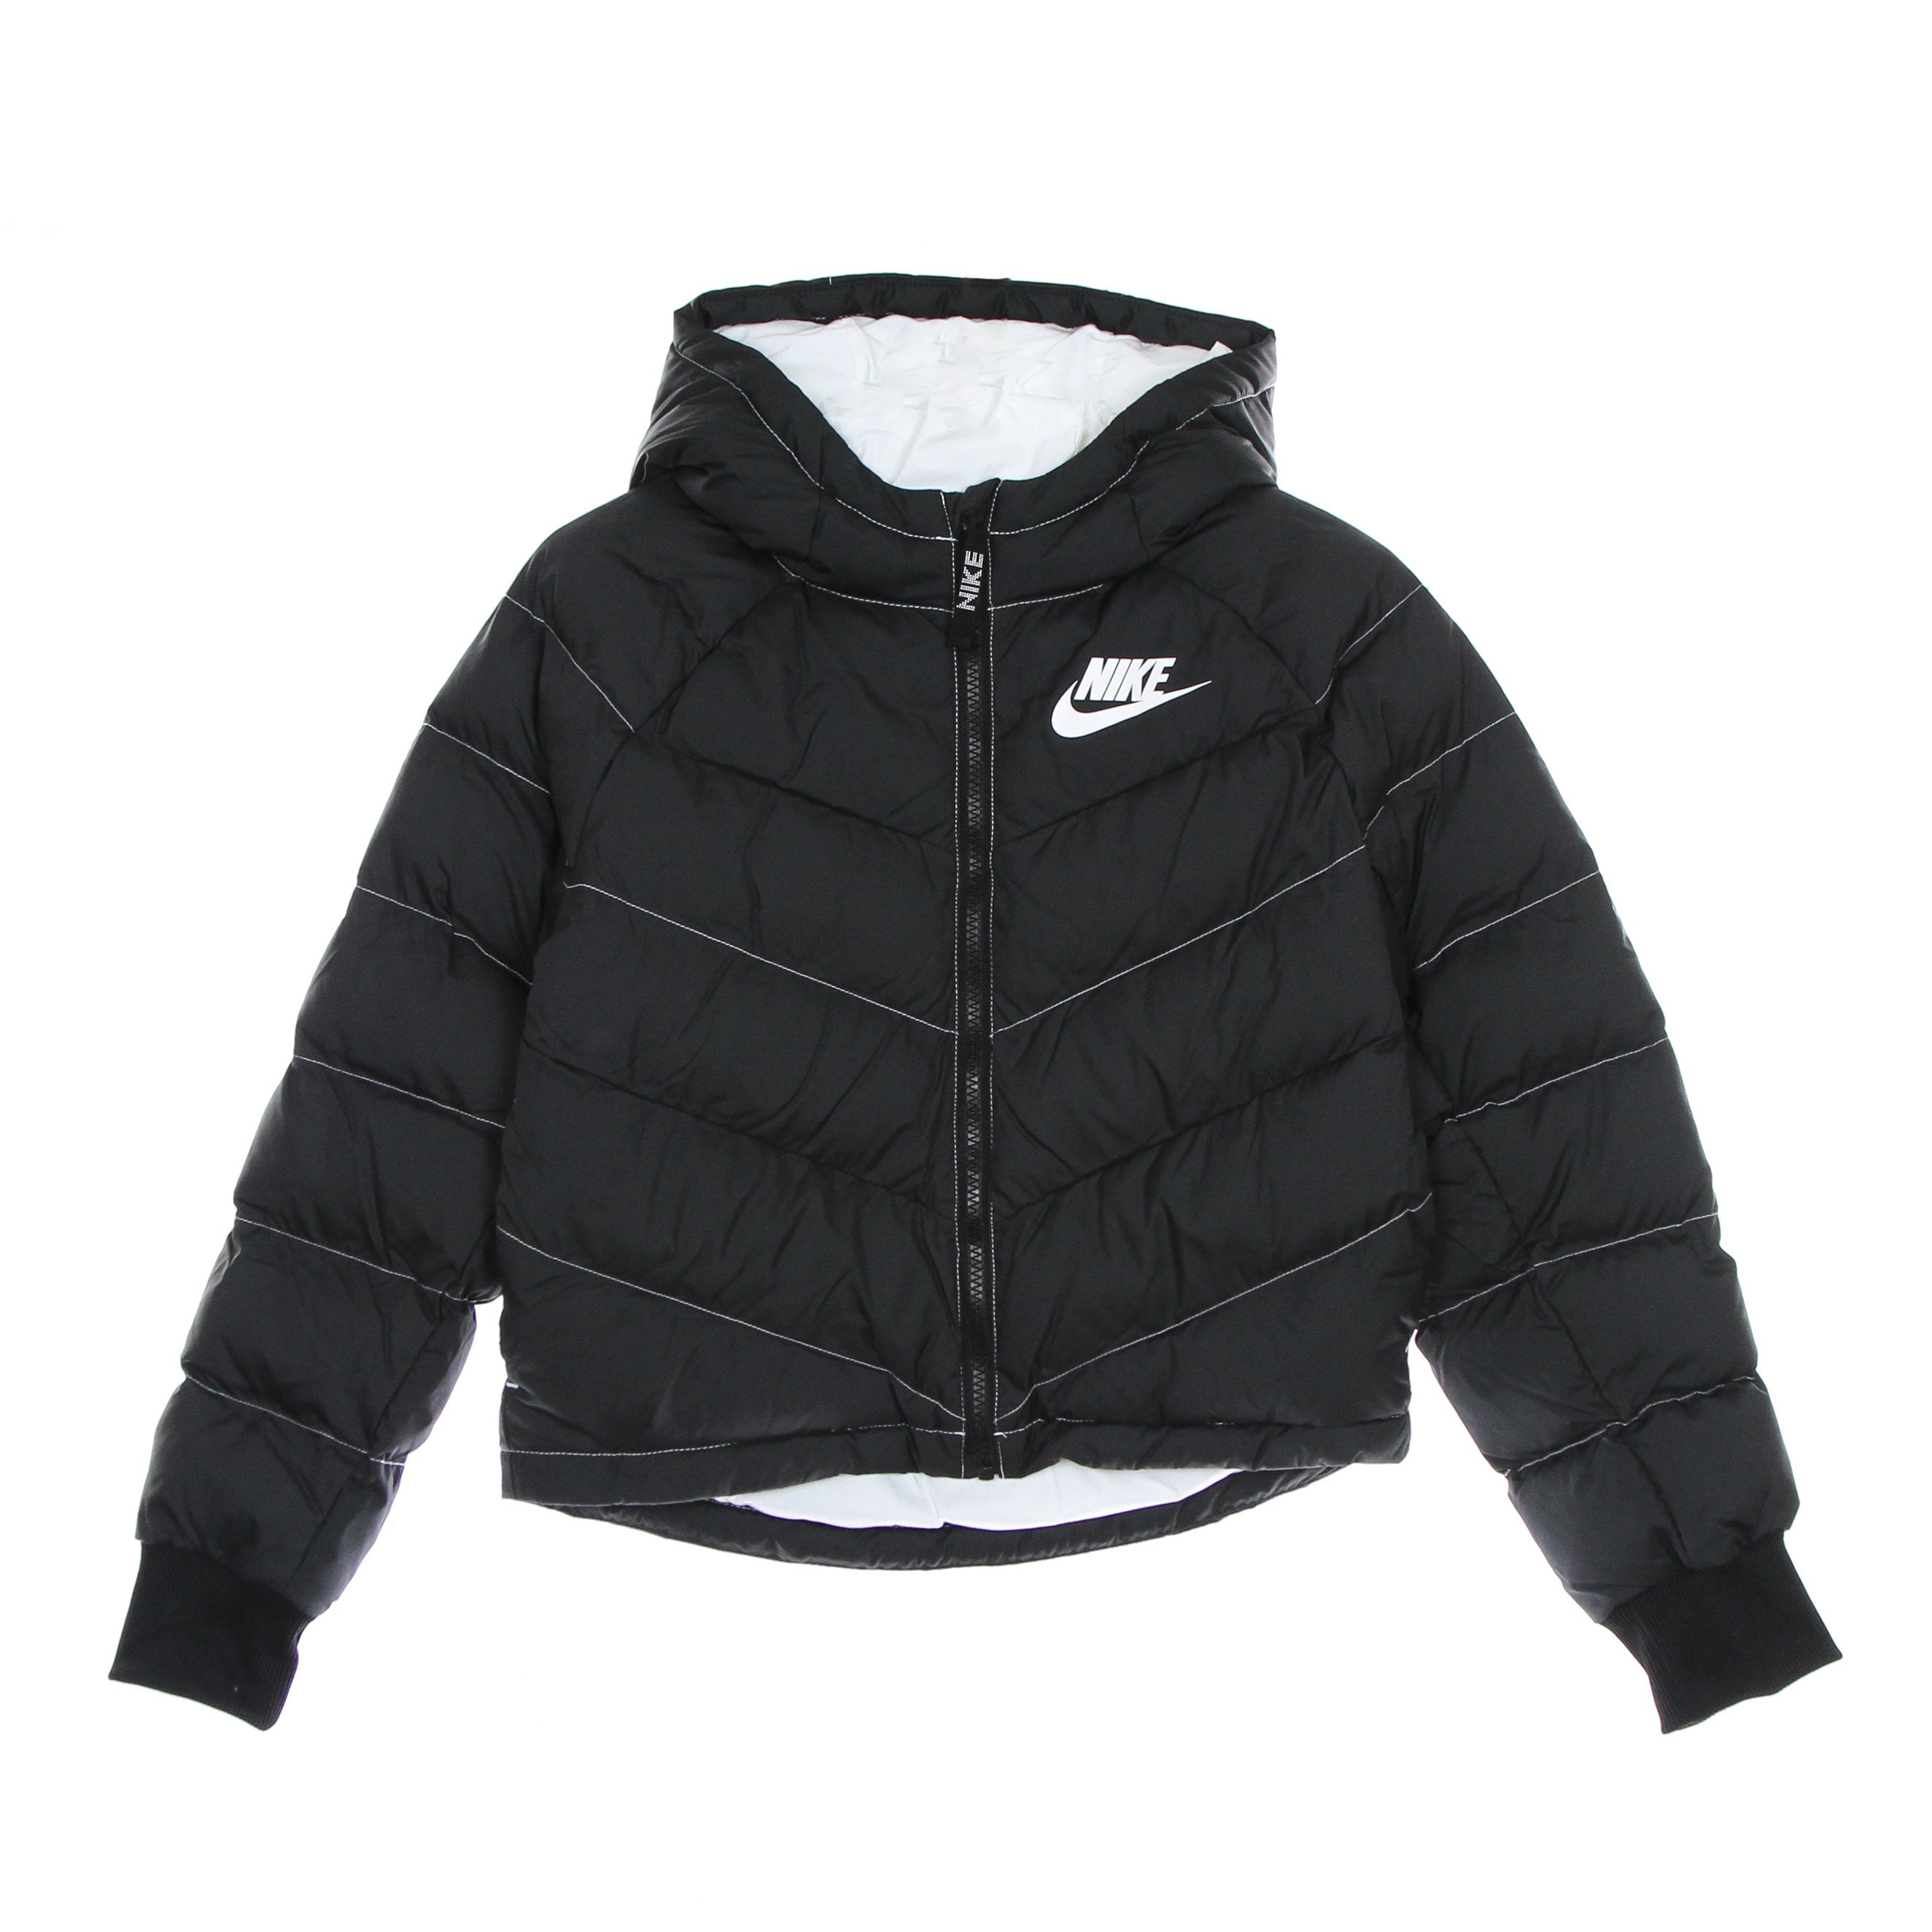 Nike, Piumino Ragazza Synthetic Fill Hooded Jacket, 